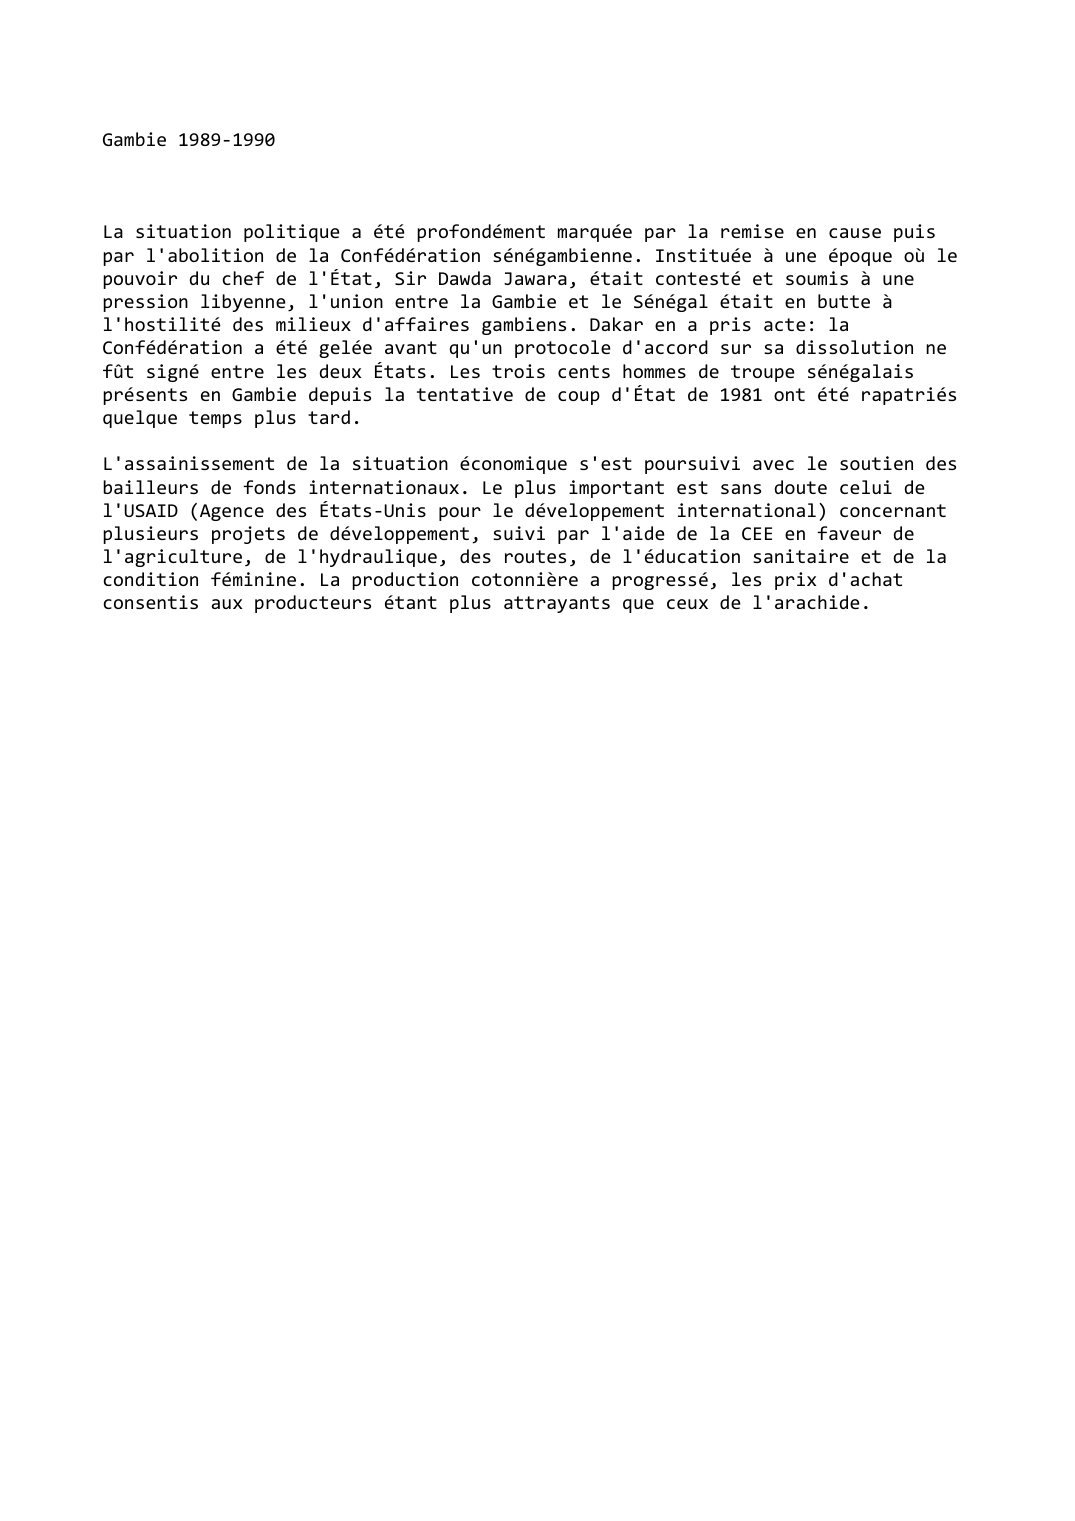 Prévisualisation du document Gambie (1989-1990)